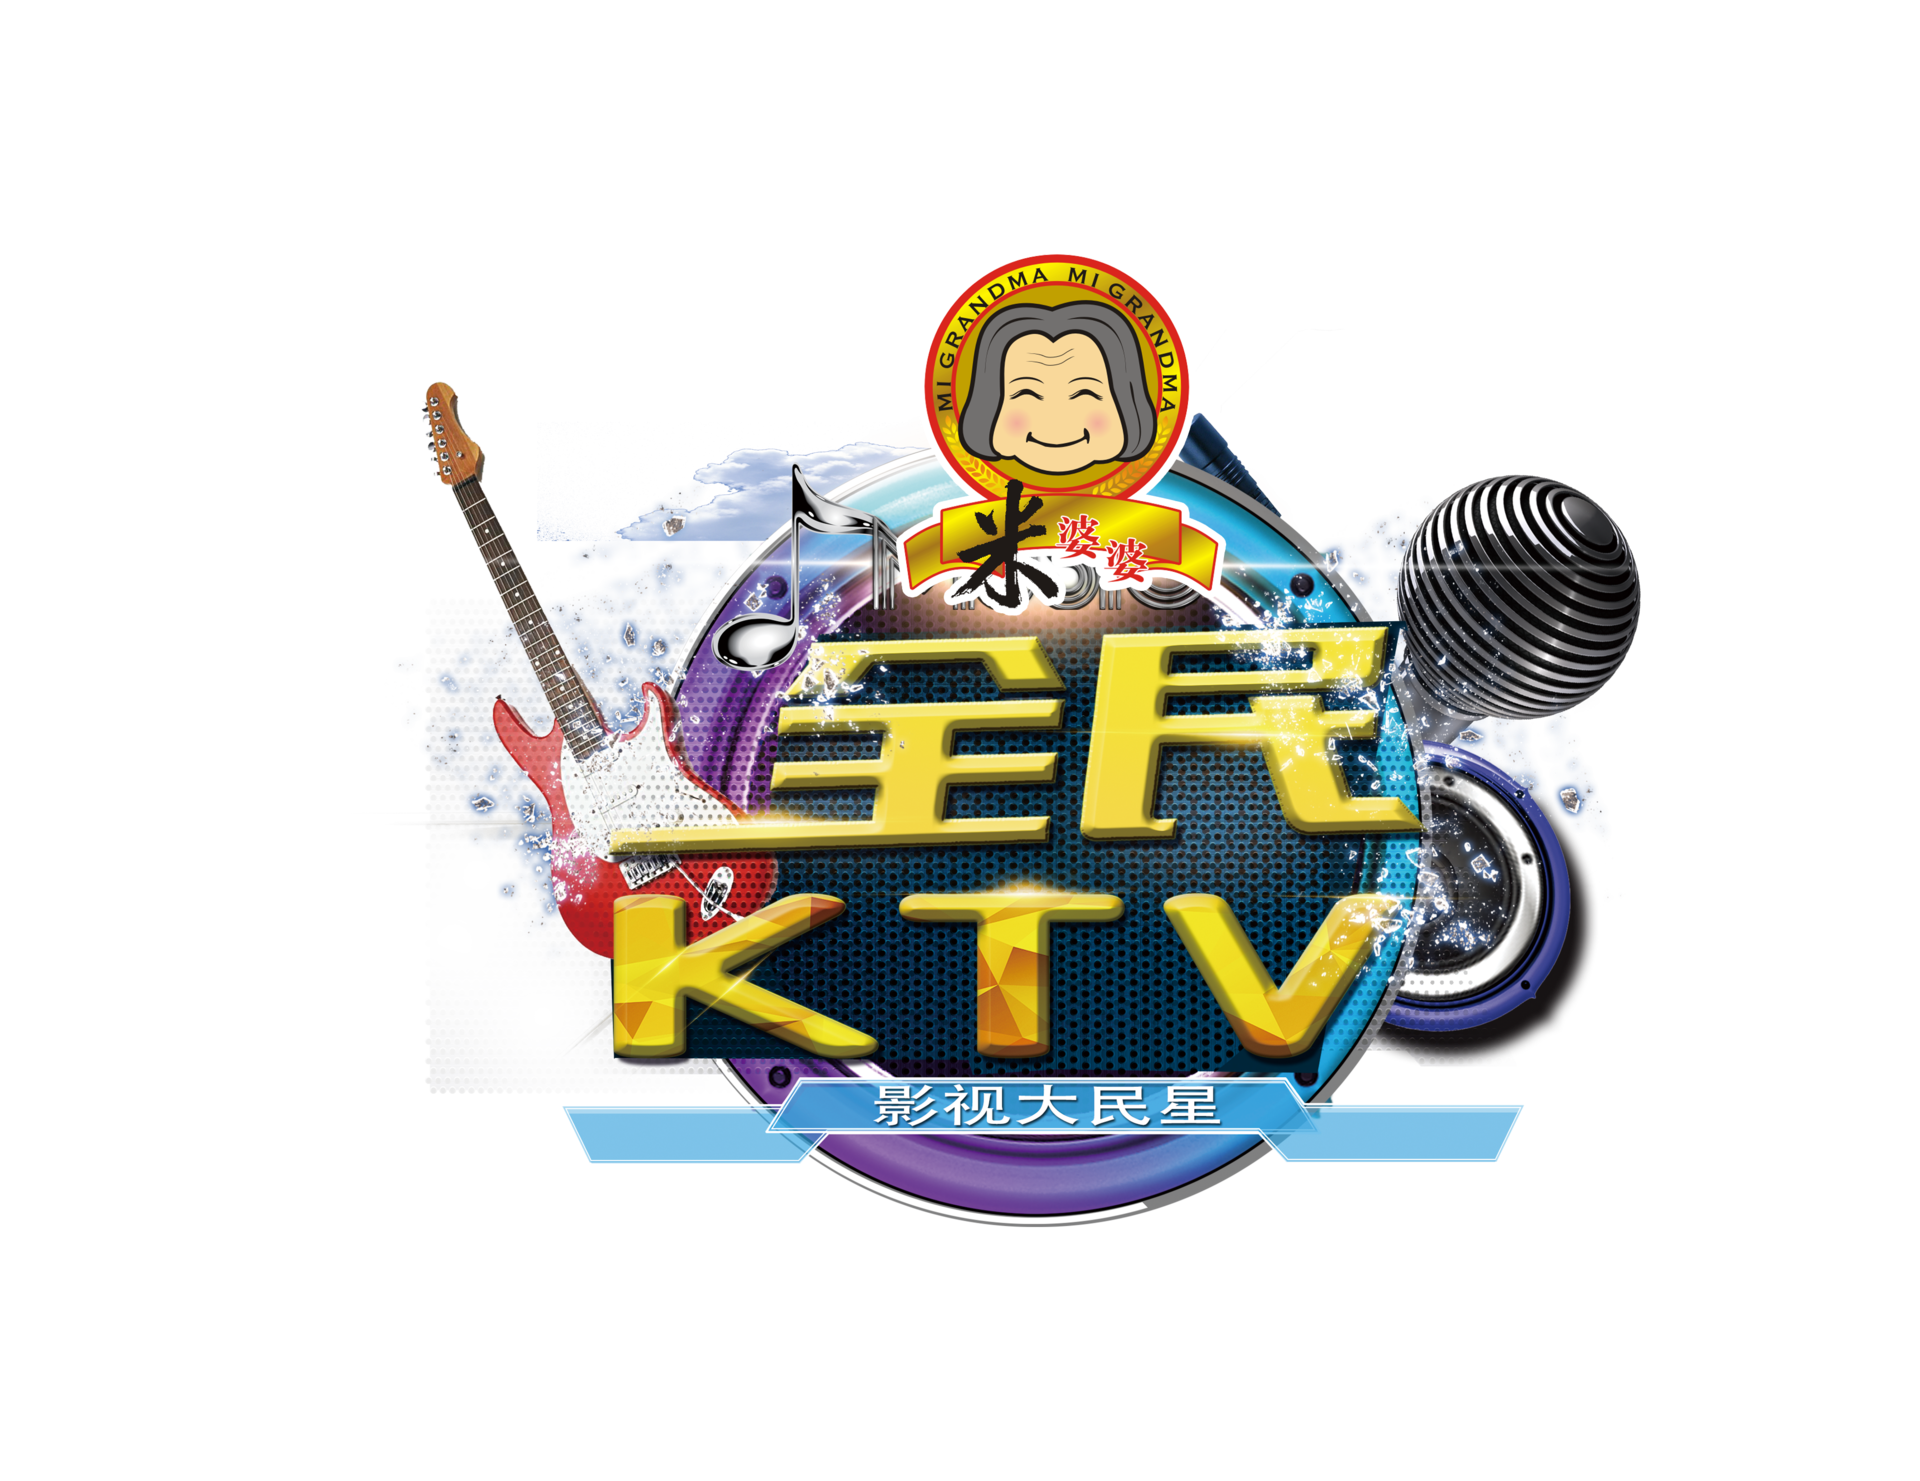 全民KTV(湖北影視頻道推出的一檔百姓音樂真人秀節目)